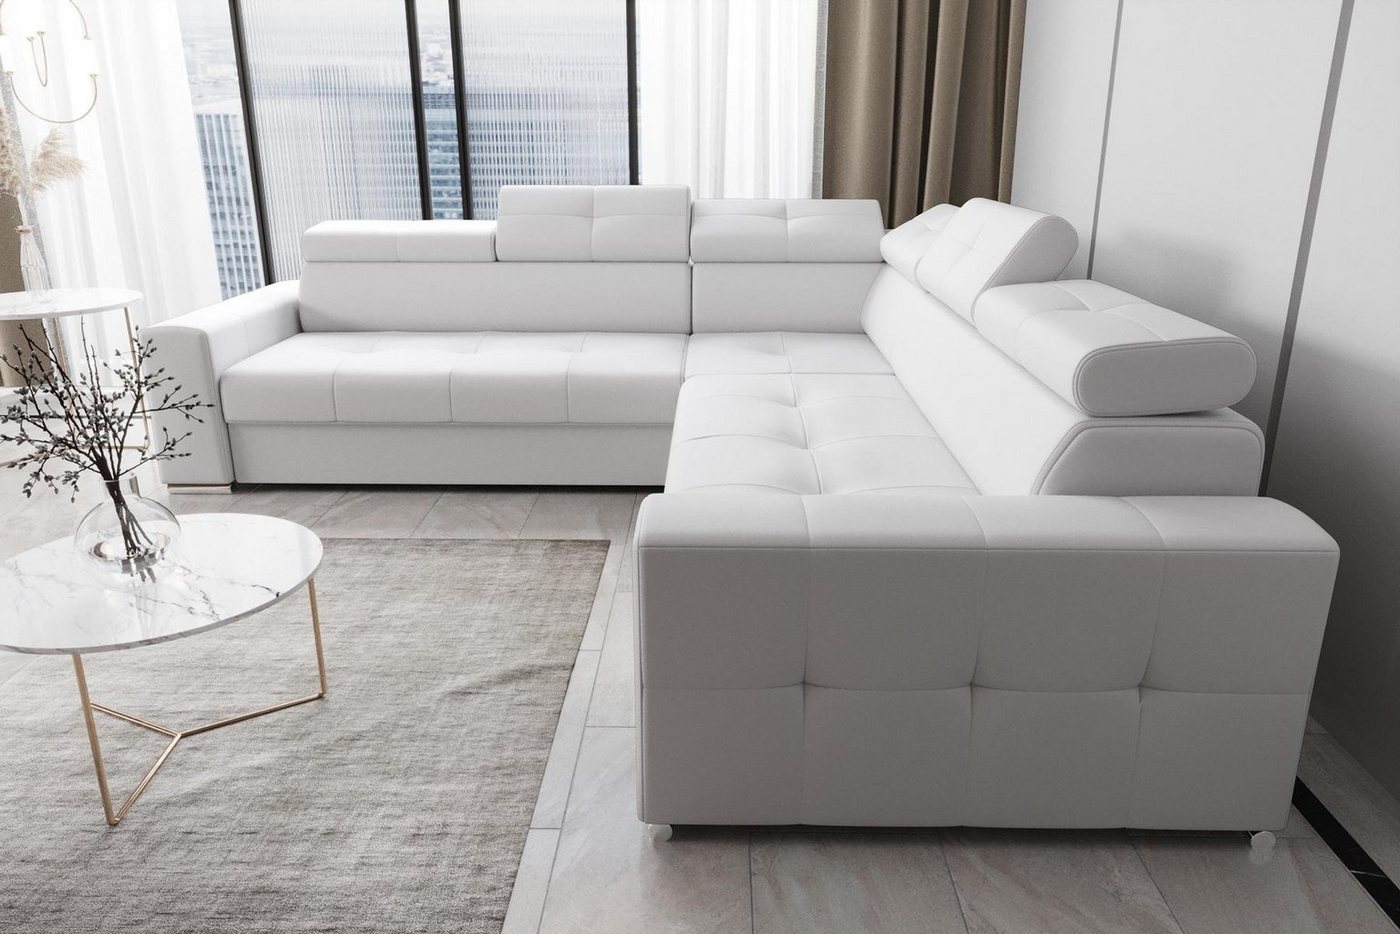 JVmoebel Ecksofa Wohnzimmer Textil Leder Luxus L Form Modern Ecksofa Couch, Made in Europe von JVmoebel